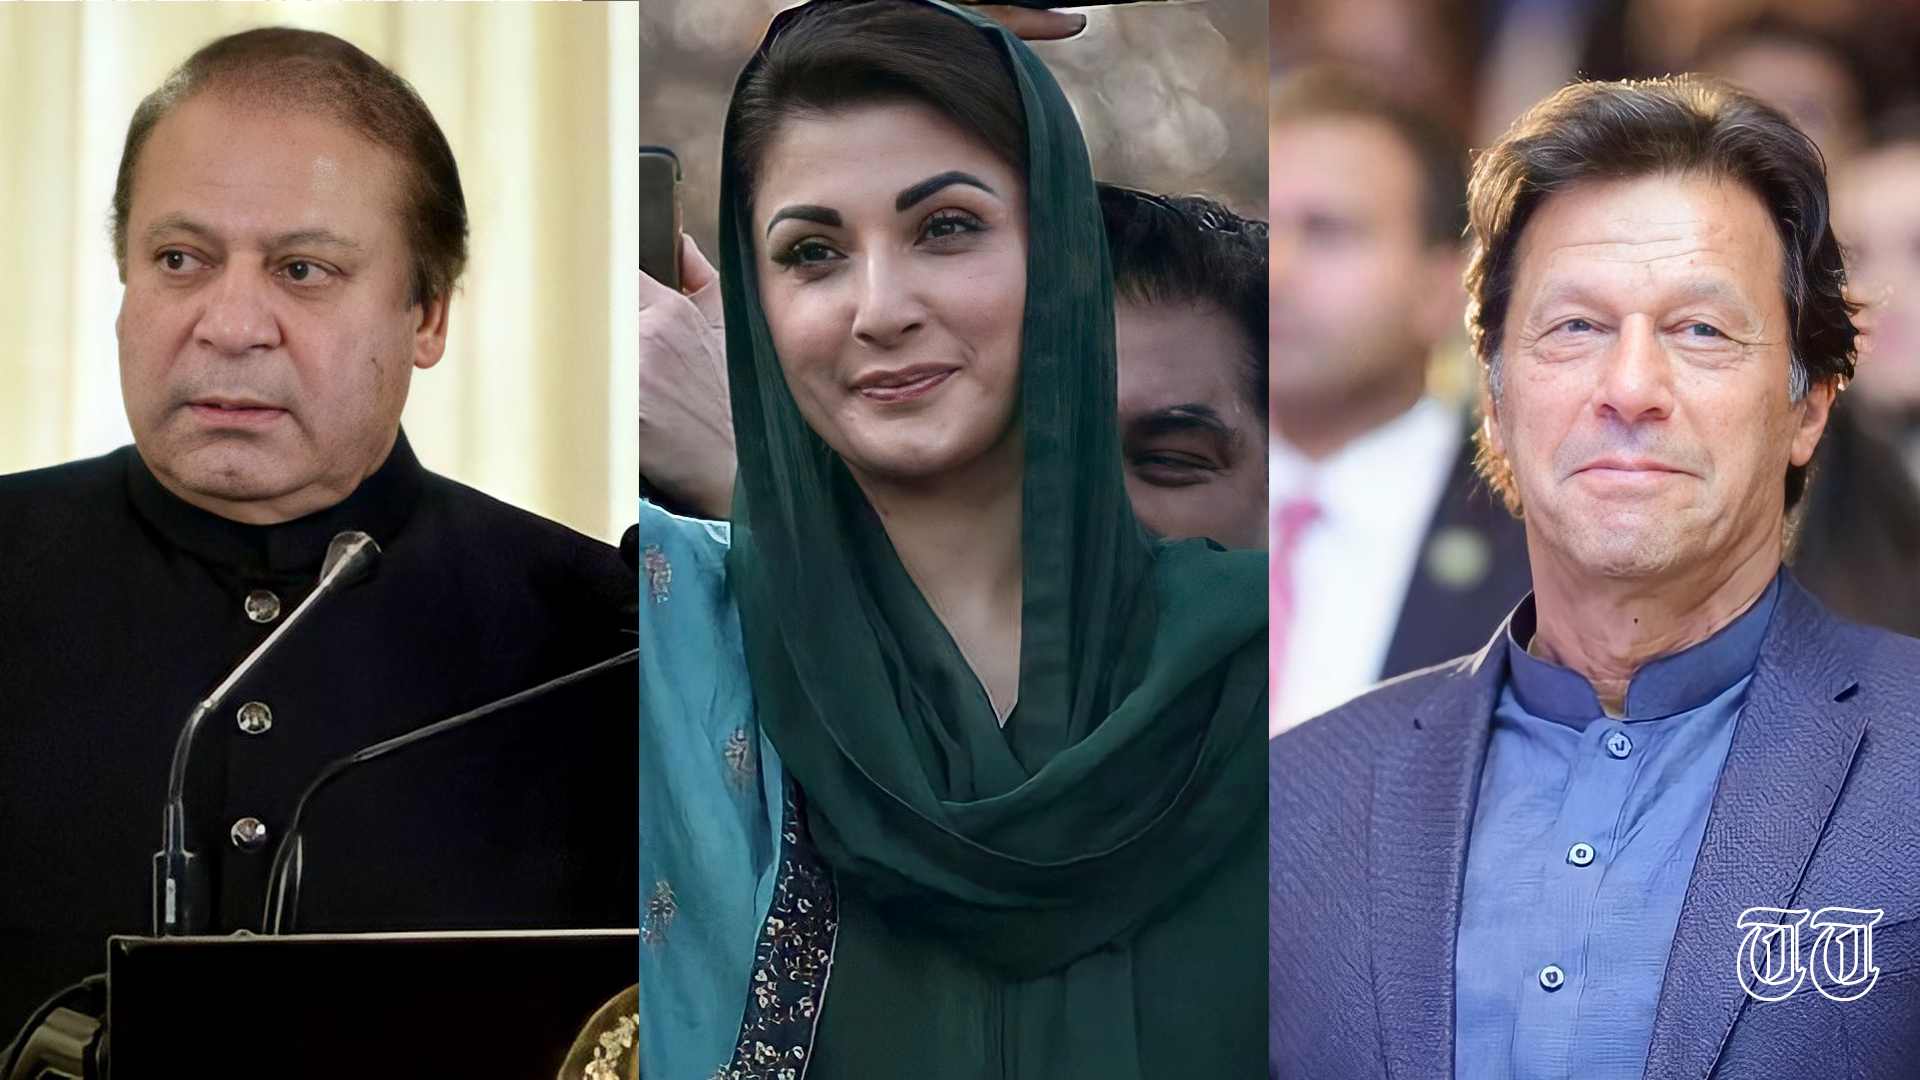 L to R shows PML(N) chief Nawaz Sharif, senior PML(N) leader Maryam Nawaz, and PTI chairman Imran Khan.